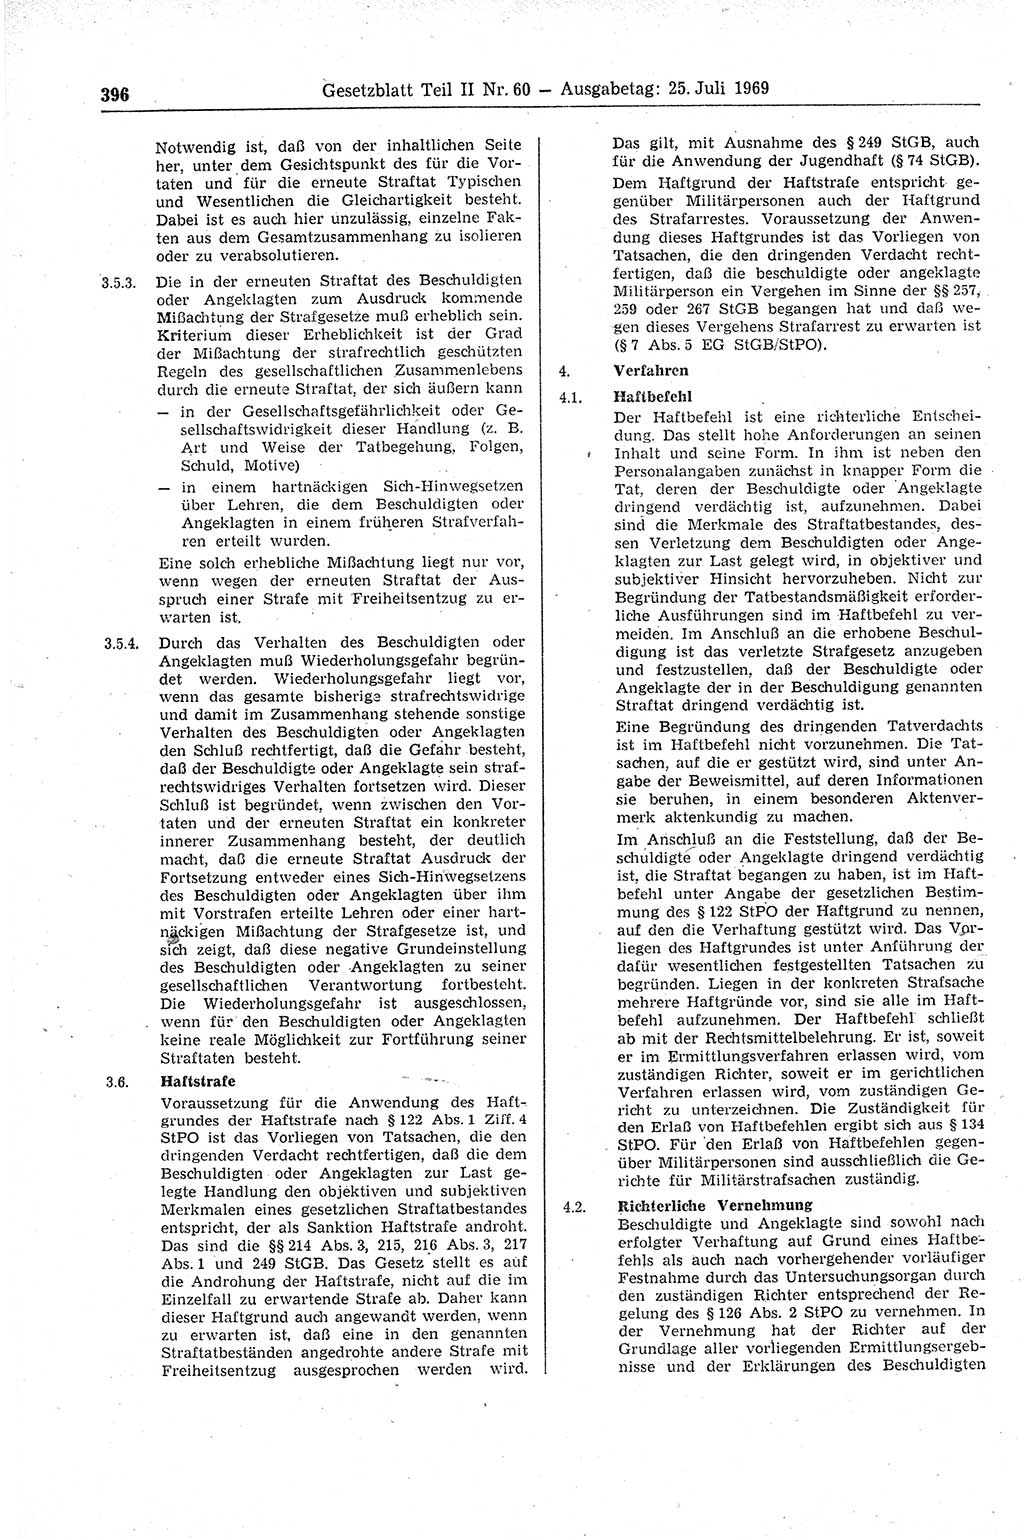 Gesetzblatt (GBl.) der Deutschen Demokratischen Republik (DDR) Teil ⅠⅠ 1969, Seite 396 (GBl. DDR ⅠⅠ 1969, S. 396)